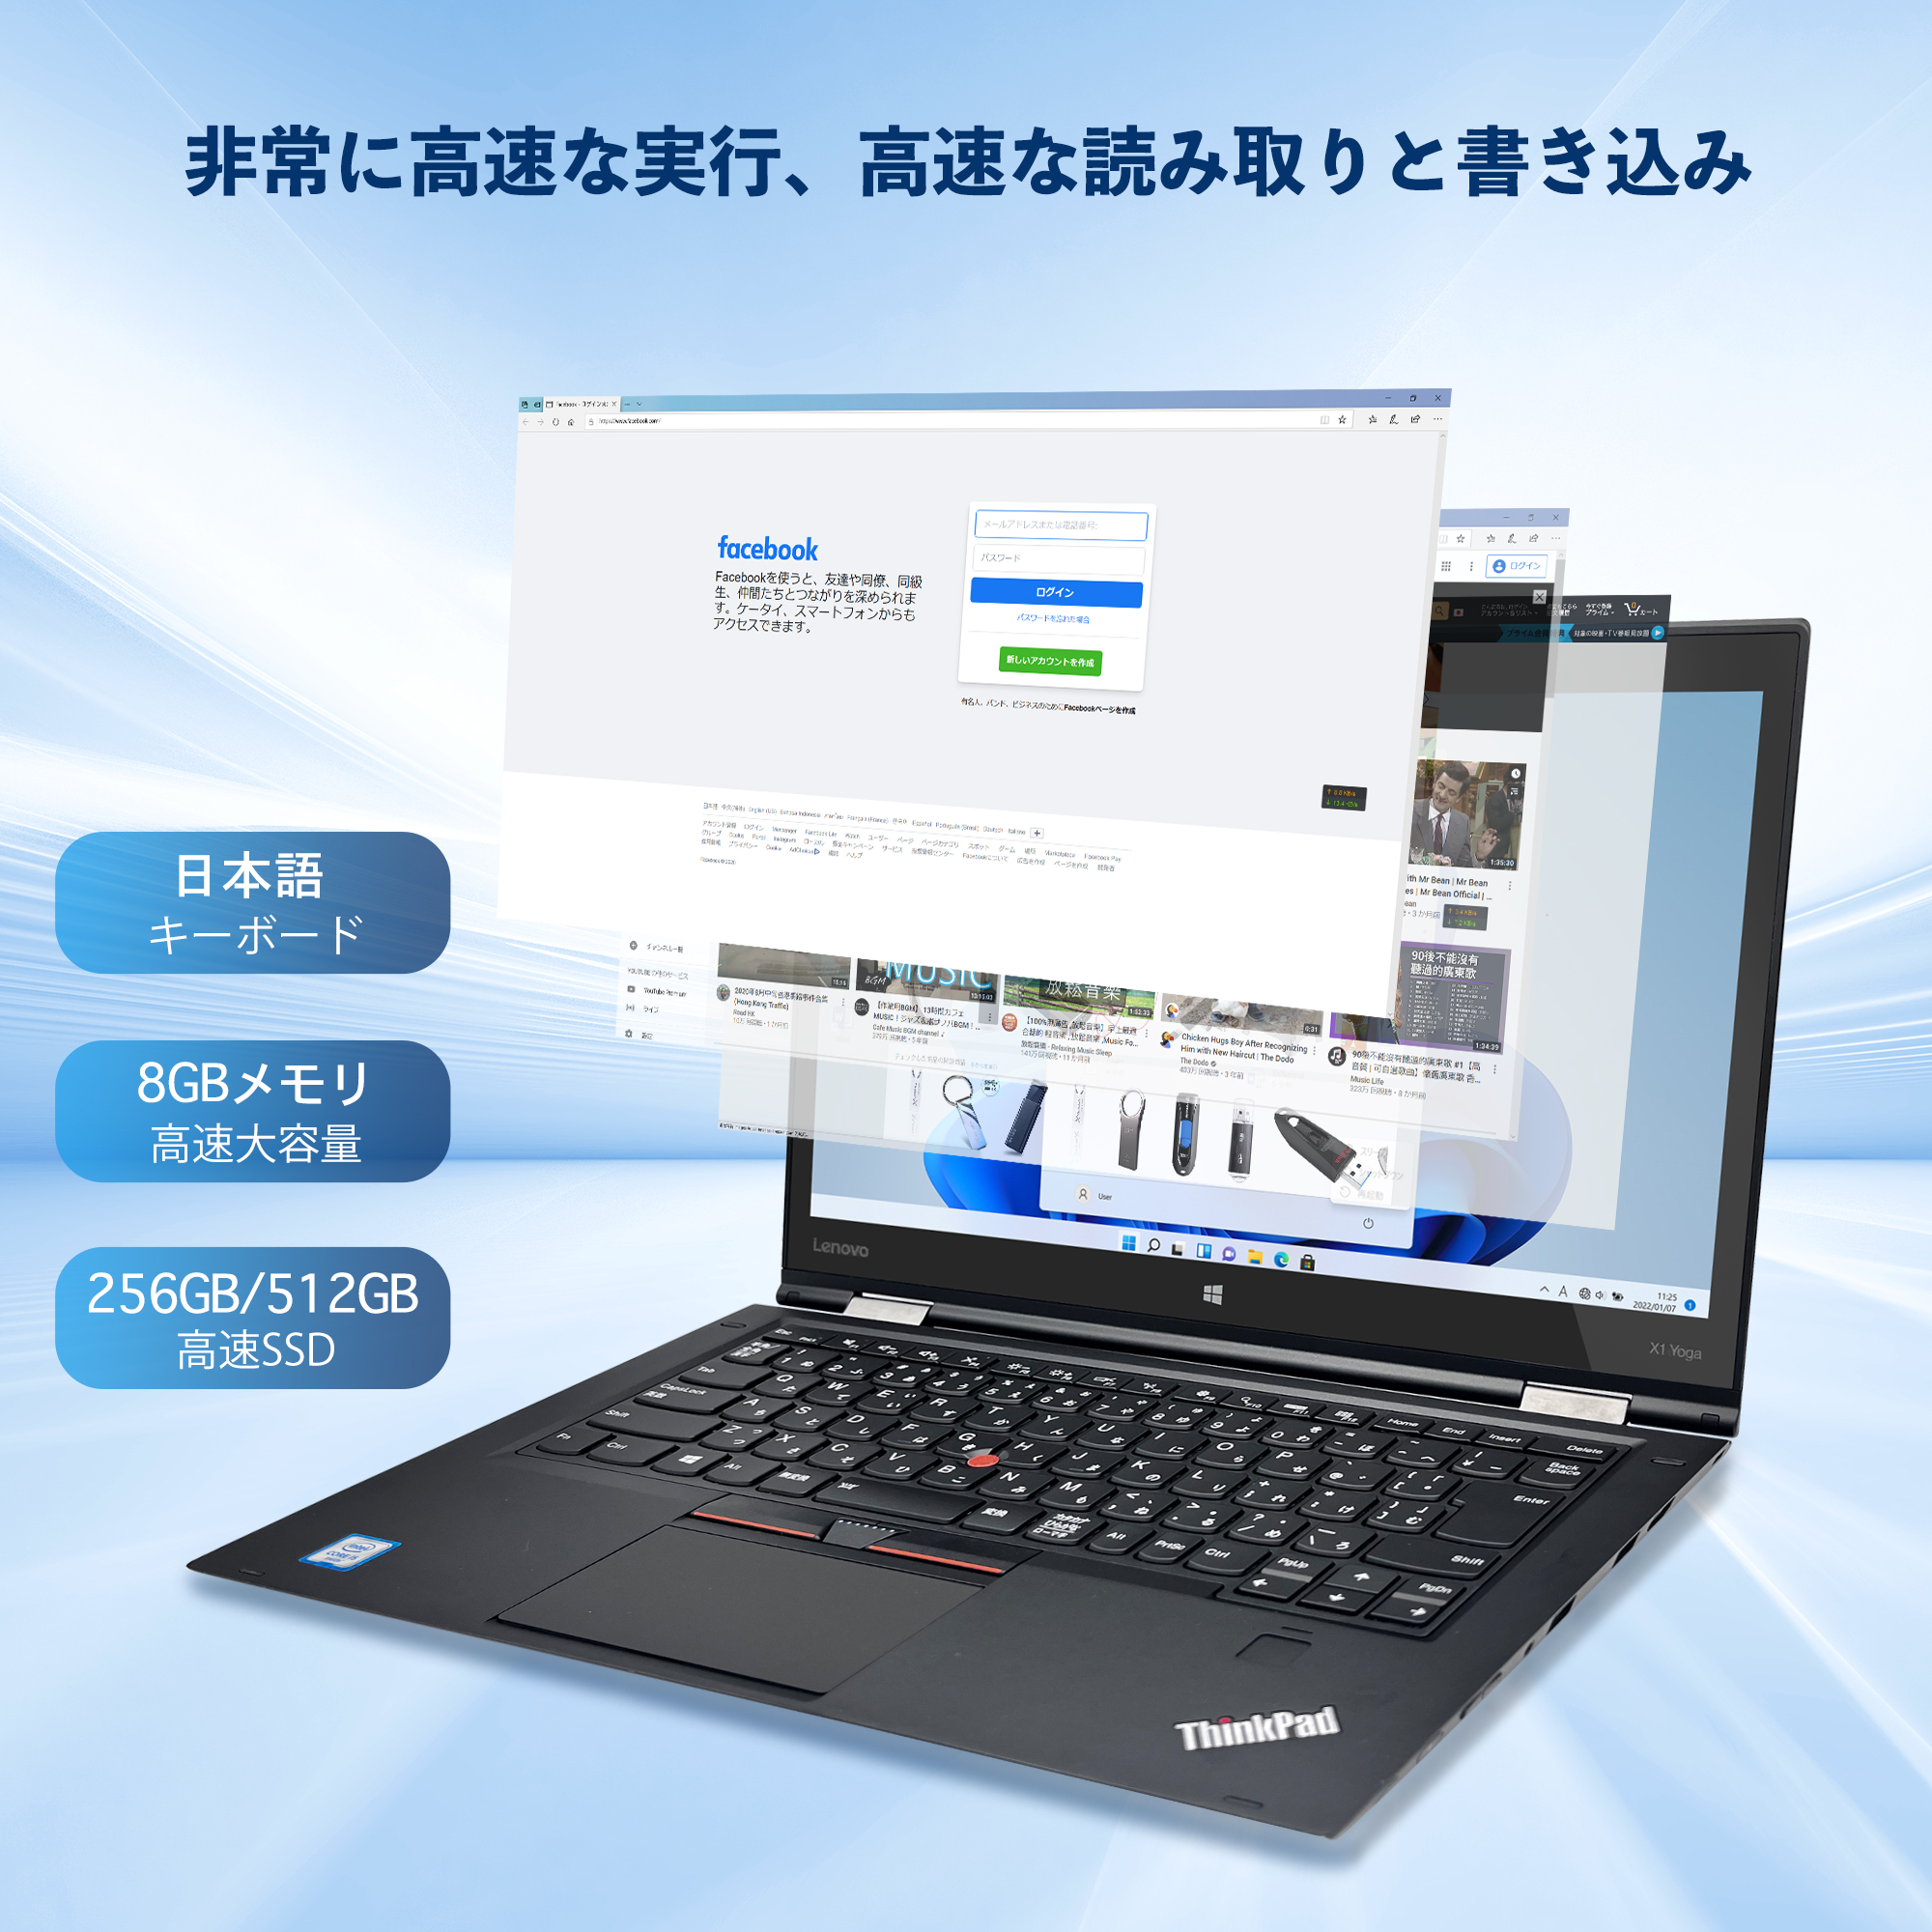 中古 ノートパソコン ノート PC office付き Windows11搭載LENOVO ThinkPad X1YOGA Core i5 8GB SSD256GB 512GB タッチ対応14型 FHD 2in1 WebカメラX1Yoga